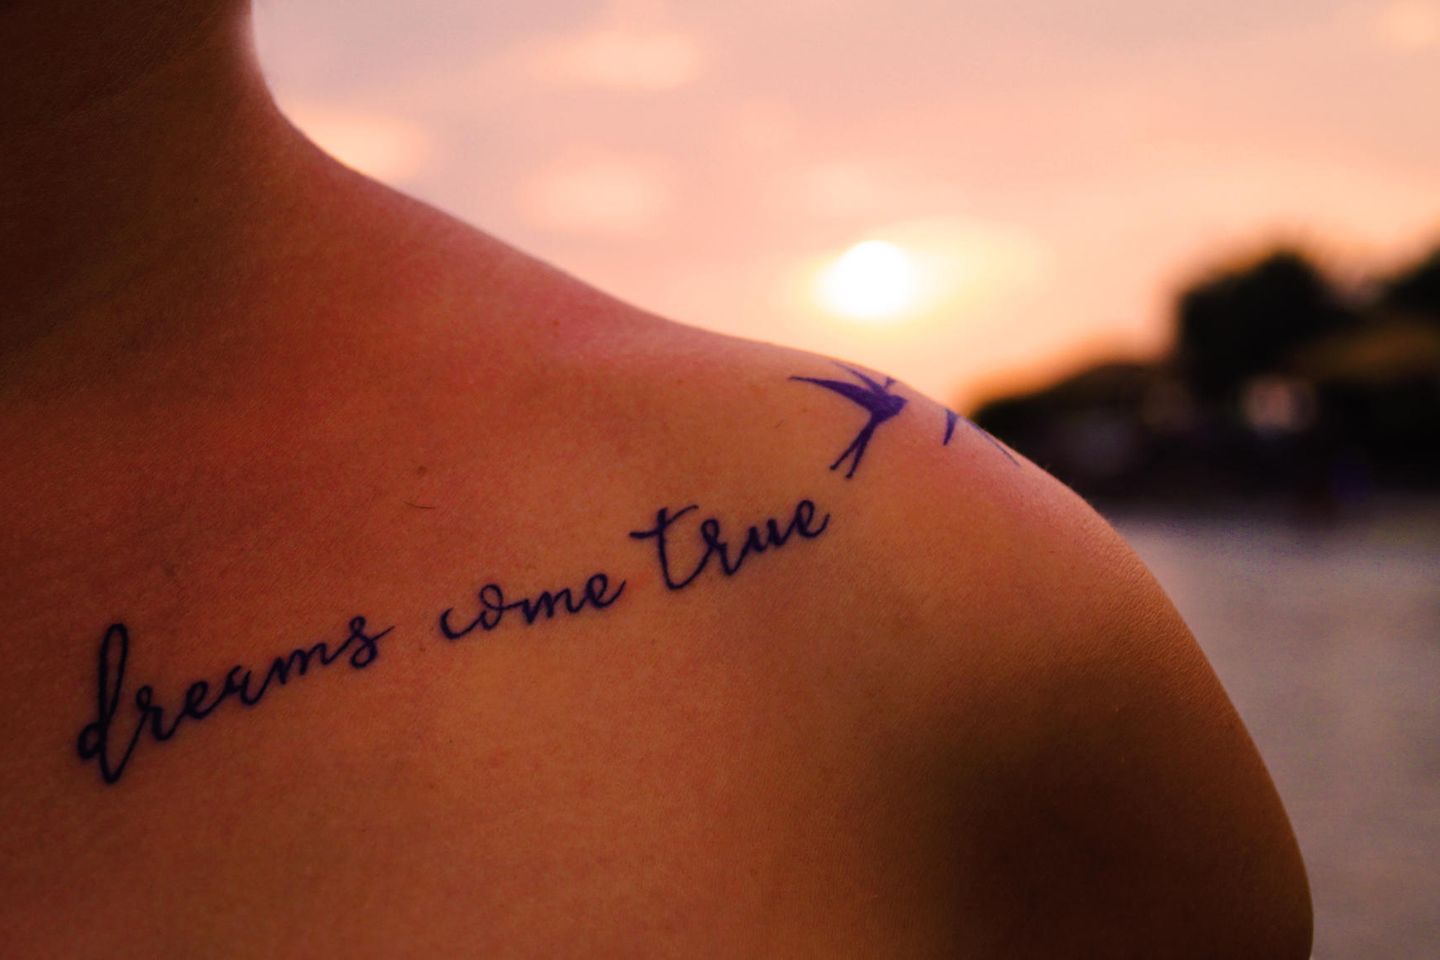 Frauen sprüche für tattoo Tattoo Sprüche